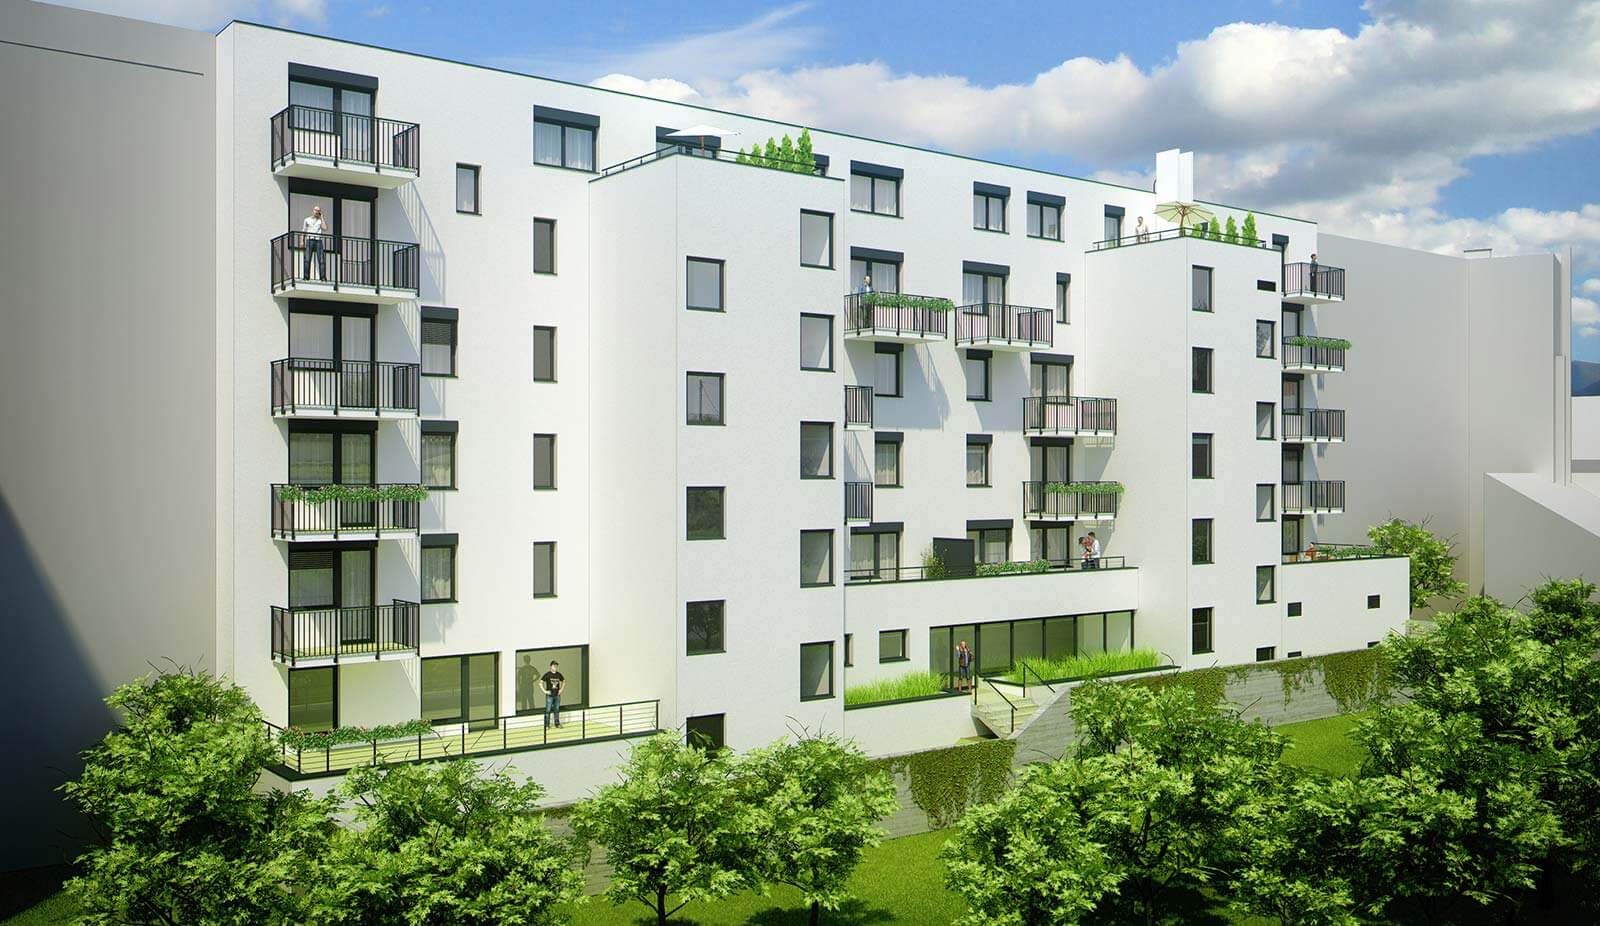 Predané: Novostavba Mezonet 4 izbový, širšie centrum v Bratislave, Beskydská ulica, 141m2, balkón a logia spolu 30,84m2, štandard.-9